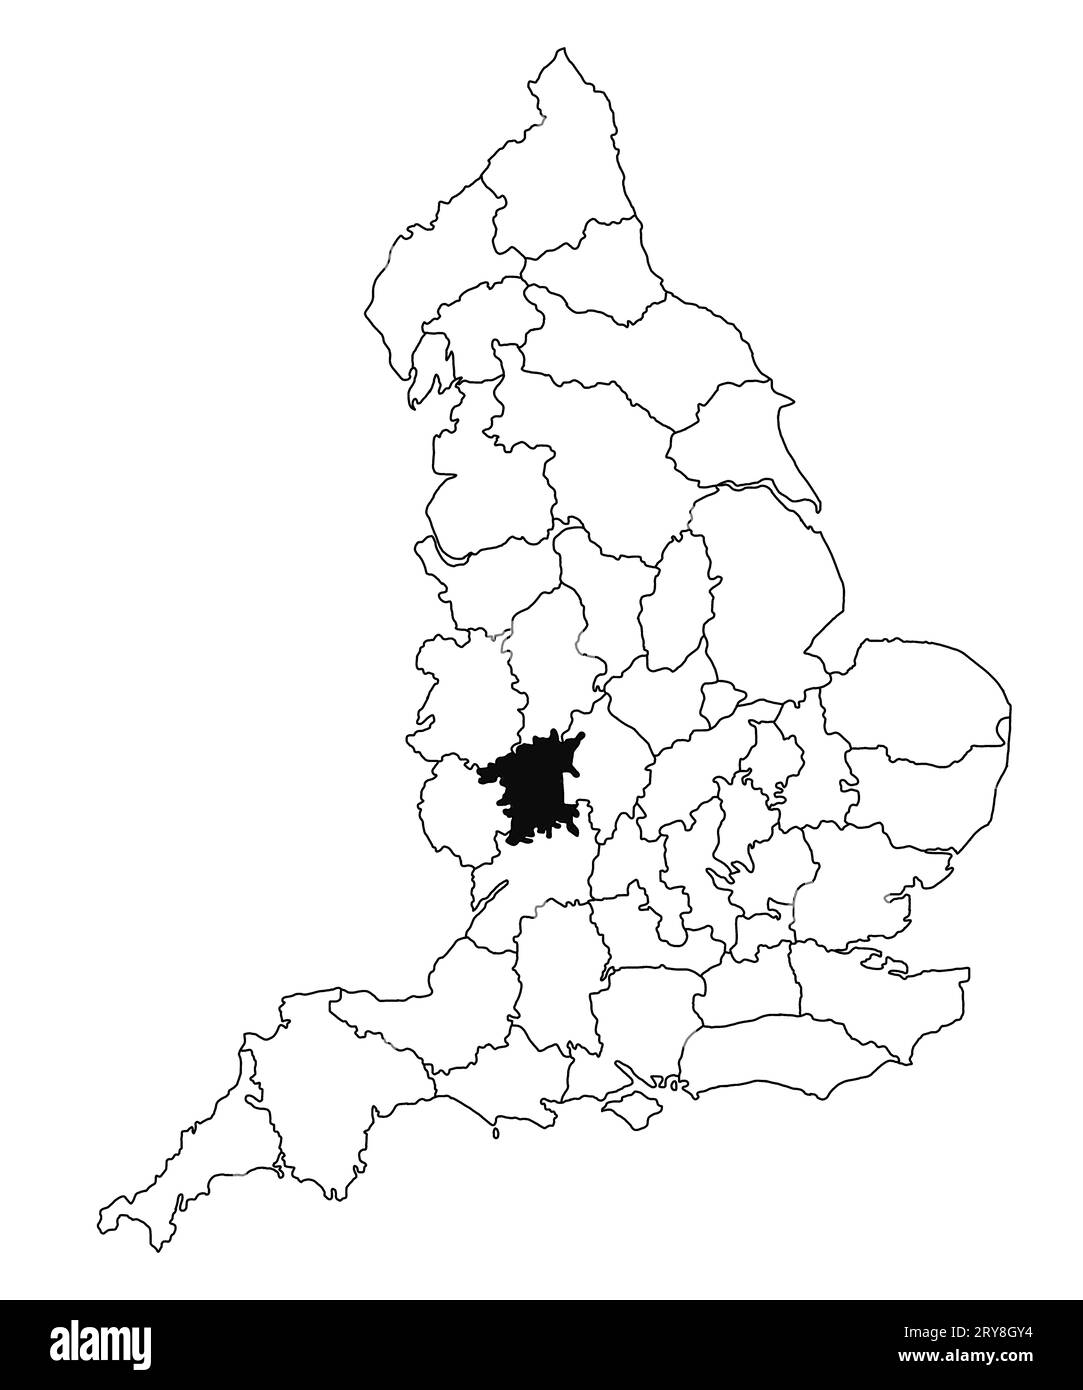 Carte du comté de Worcestershire en Angleterre sur fond blanc. Carte du comté unique mise en évidence en noir sur la carte administrative de l'Angleterre.. Roi Uni Banque D'Images